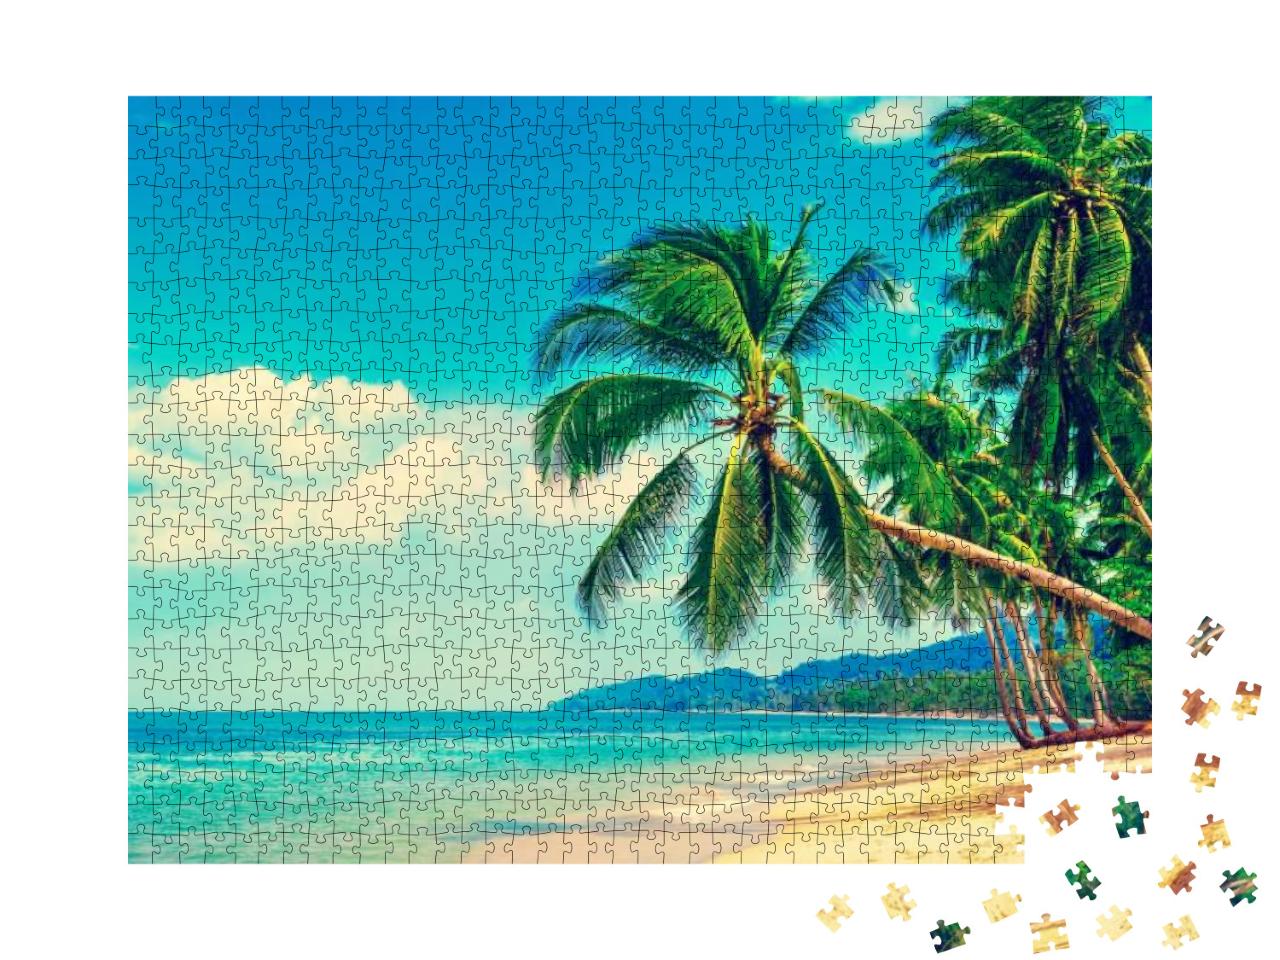 Puzzle 1000 Teile „Tropisches Strandparadies“